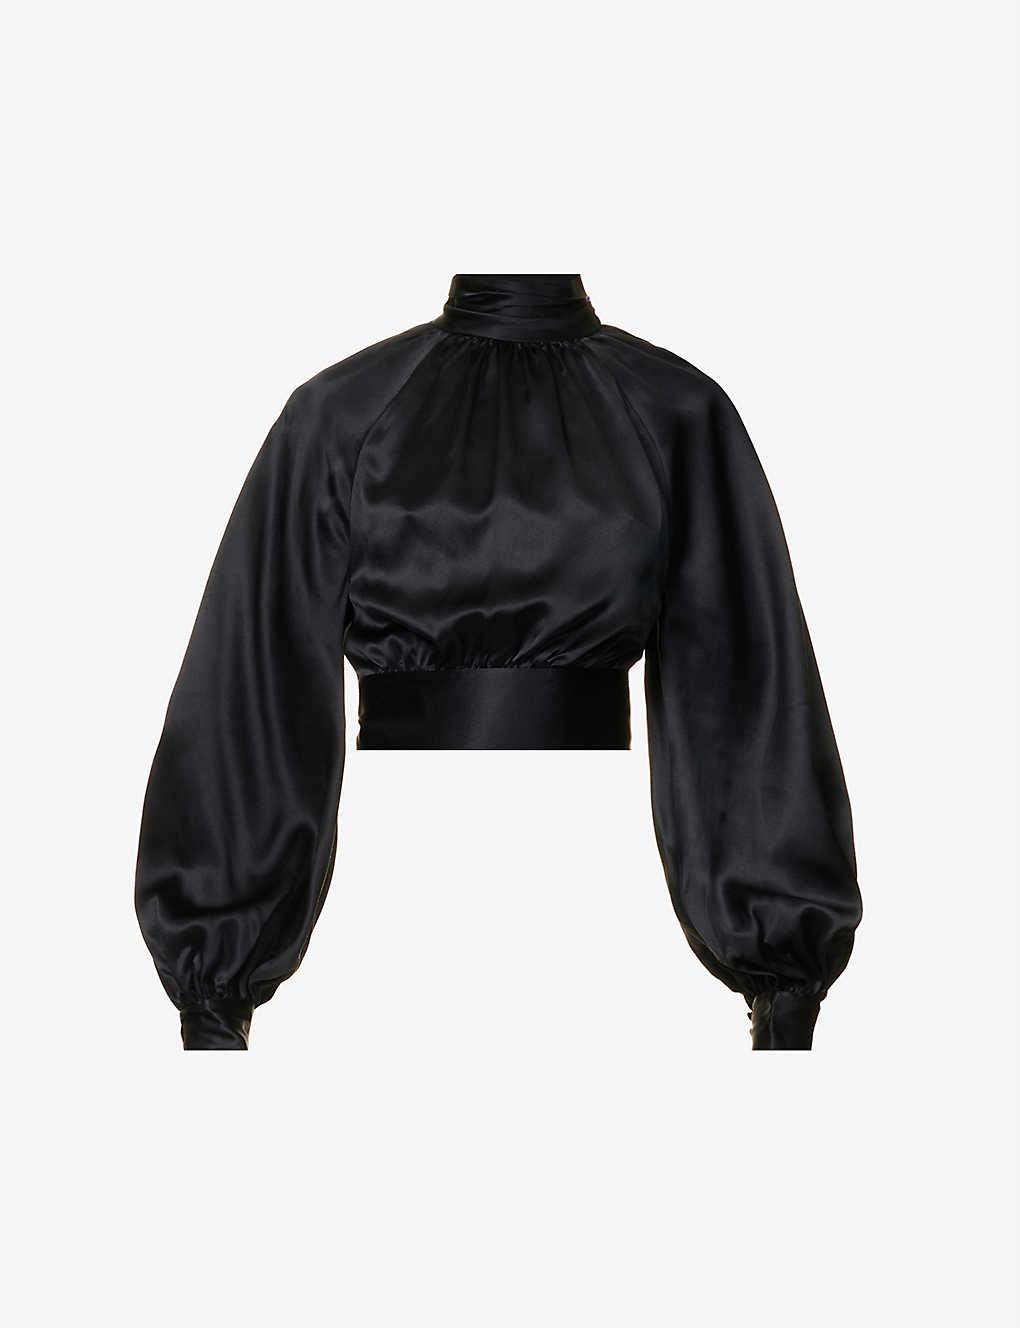 Reformation Julia Open-back Silk Top in Black | Lyst